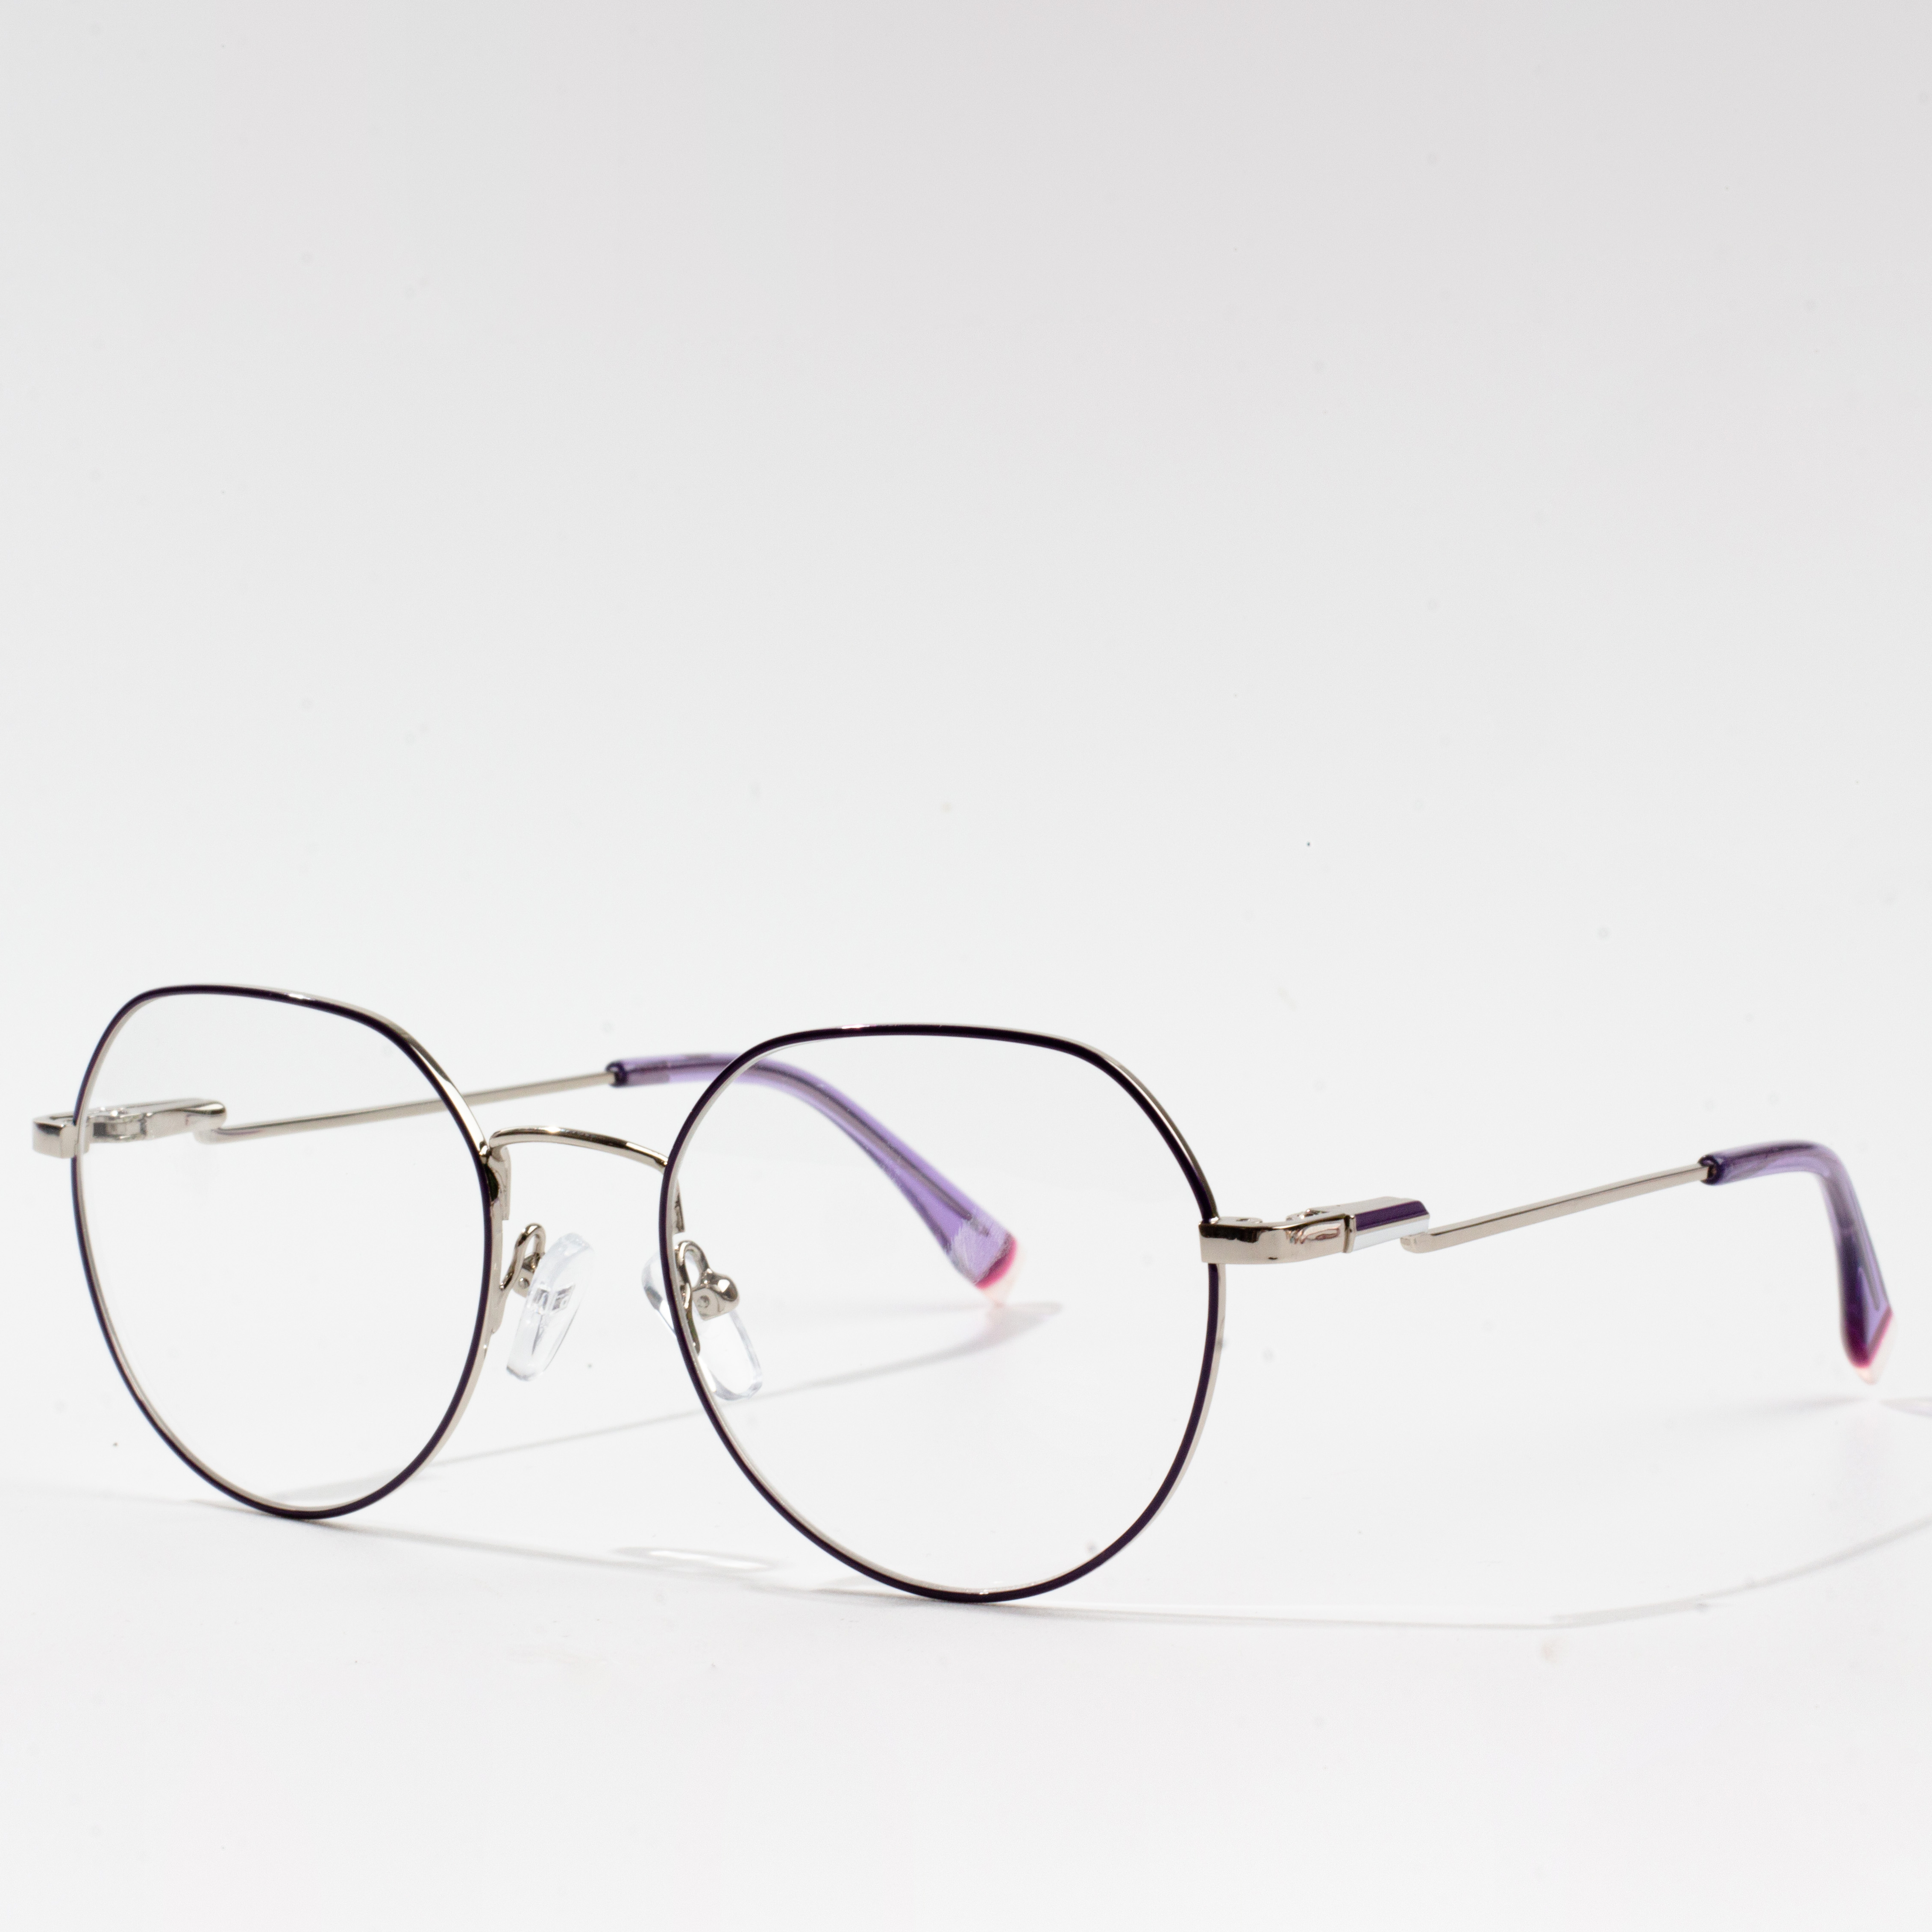 cele mai populare rame de ochelari